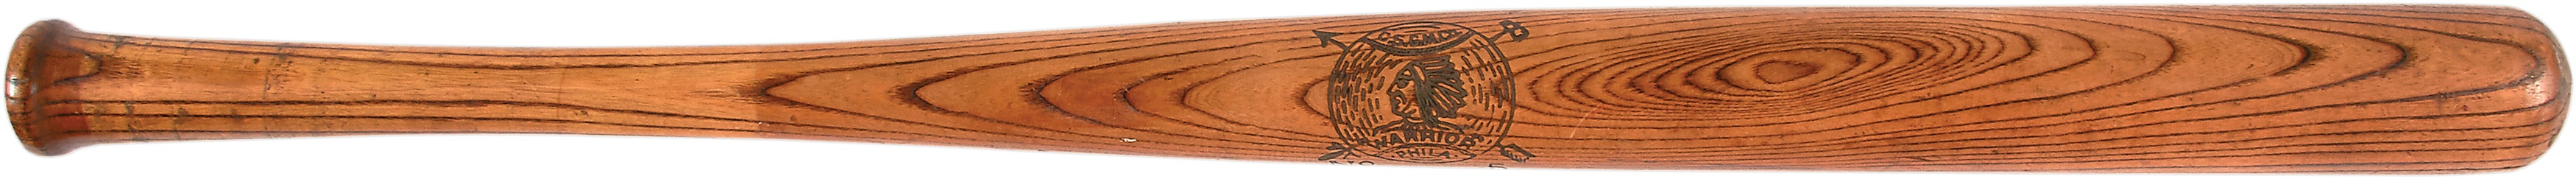 Circa 1900 Warrior Baseball Bat